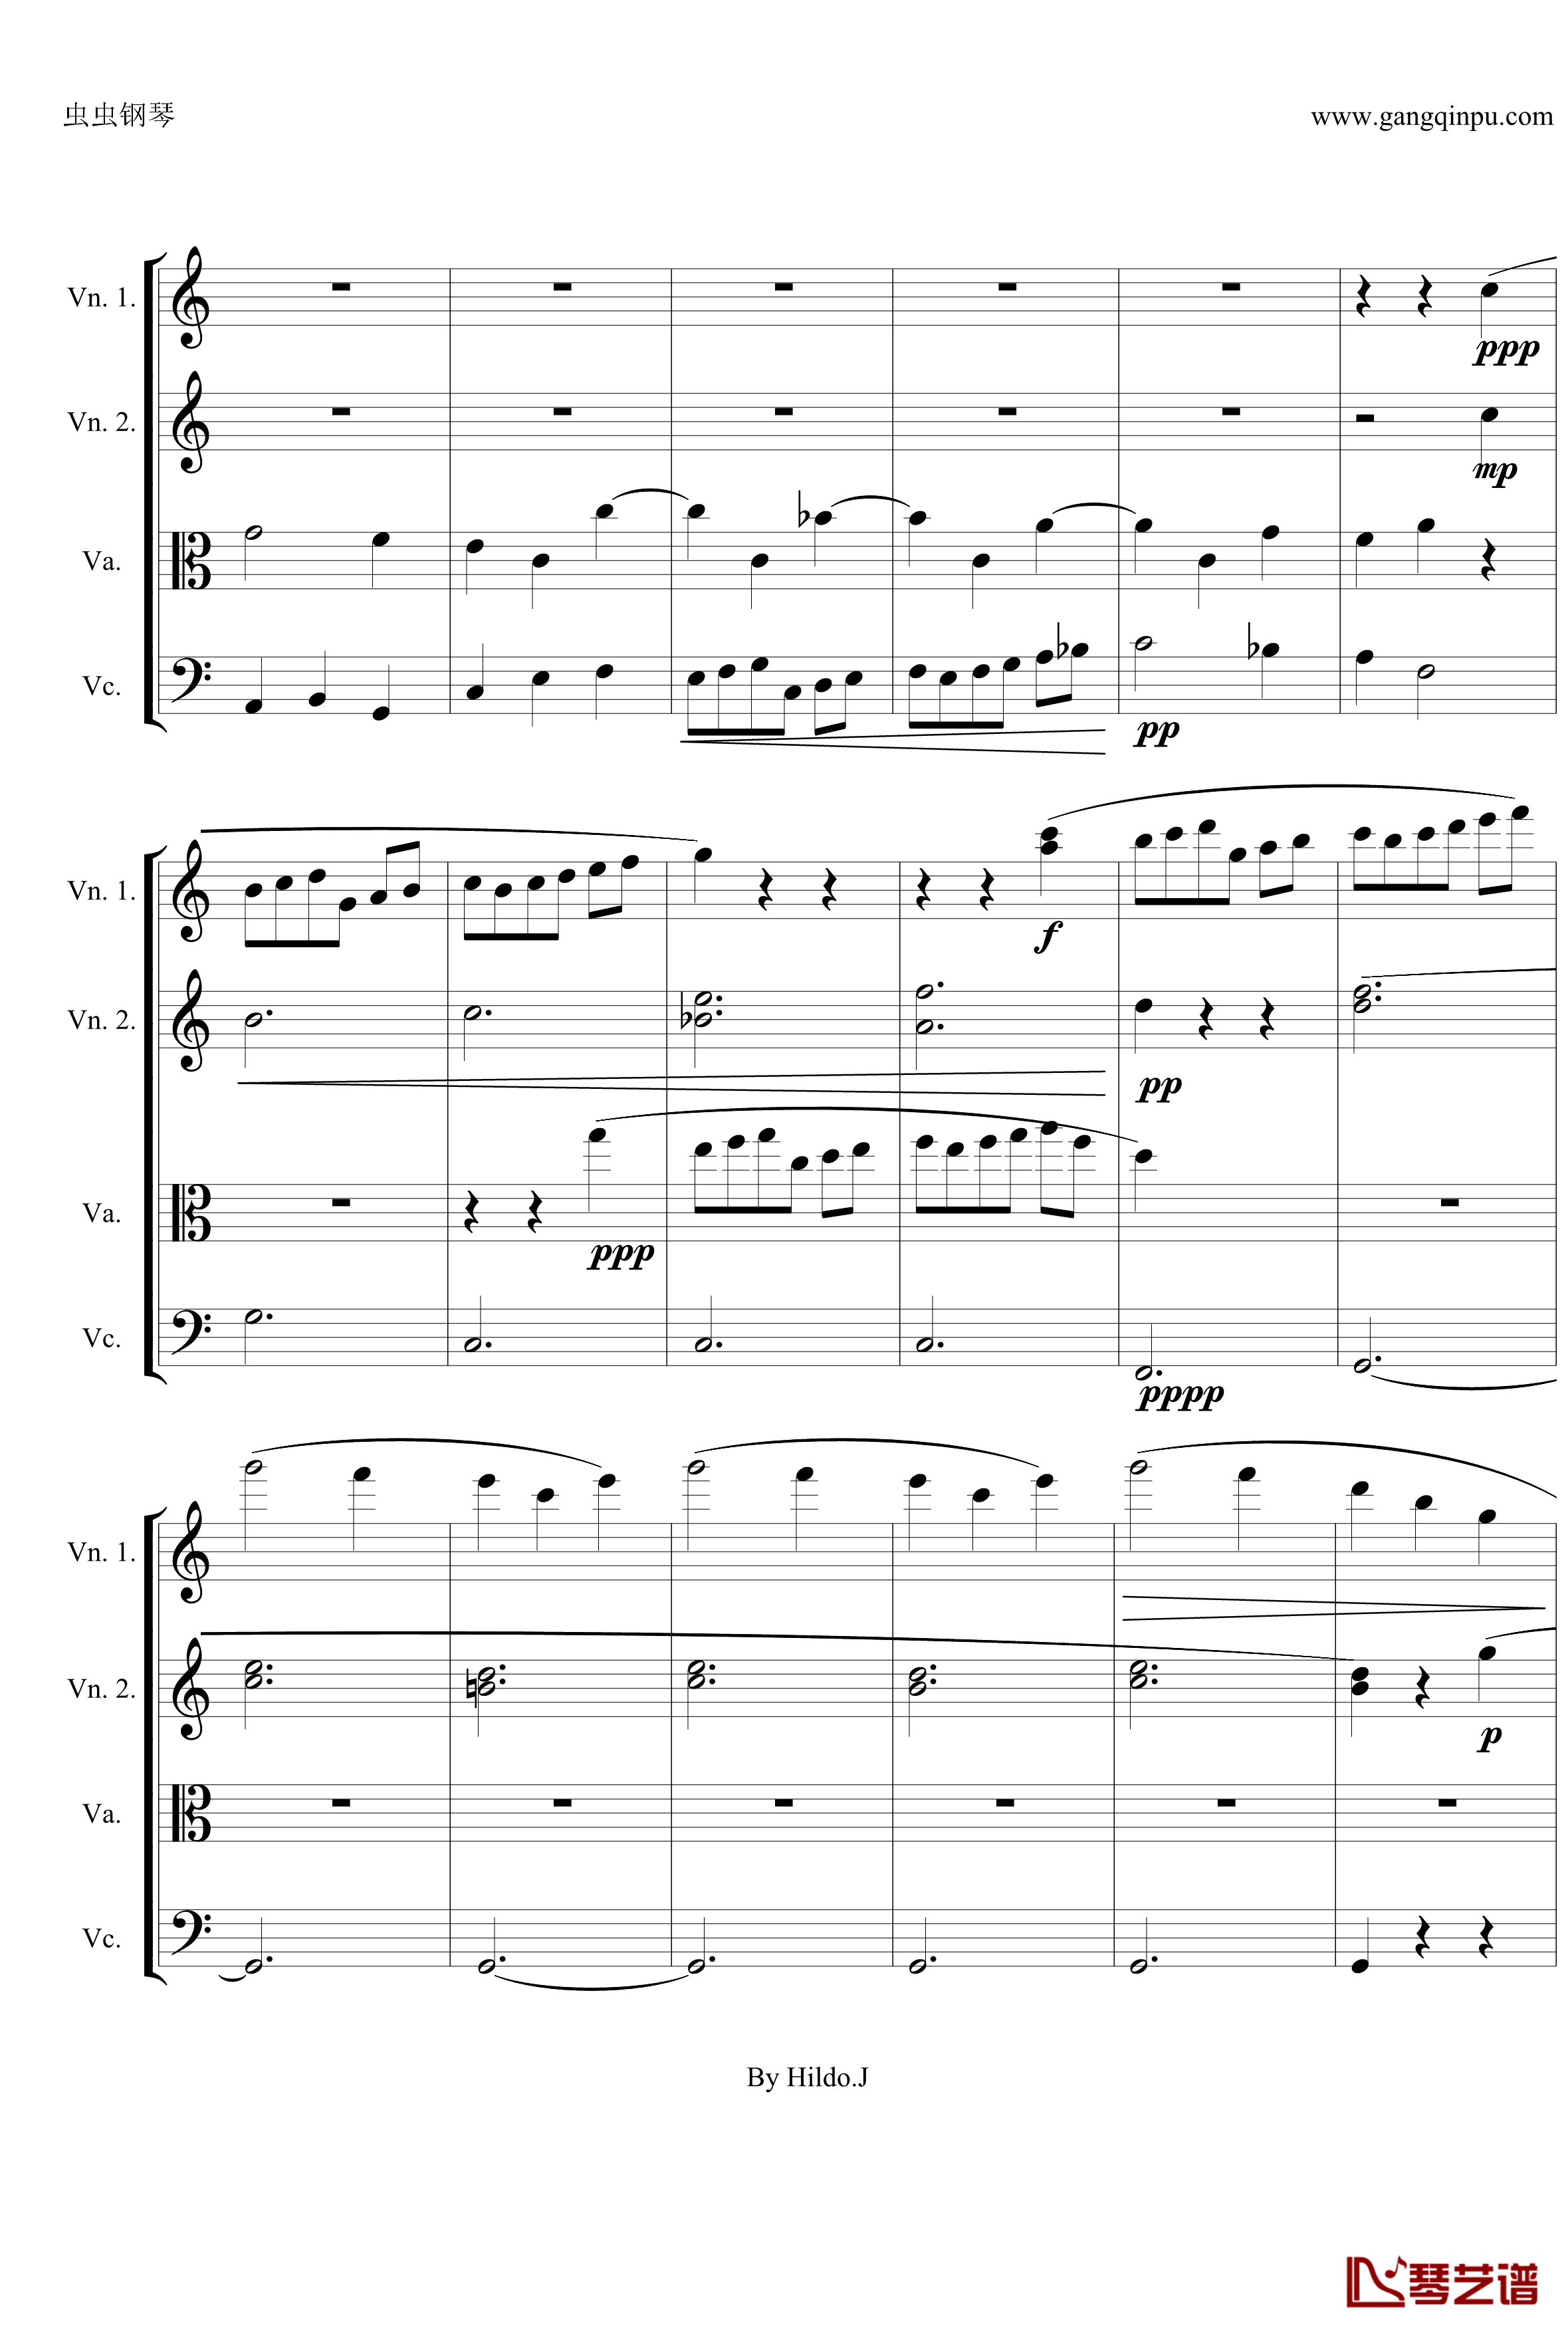 命运交响曲第三乐章钢琴谱-弦乐版-贝多芬-beethoven15